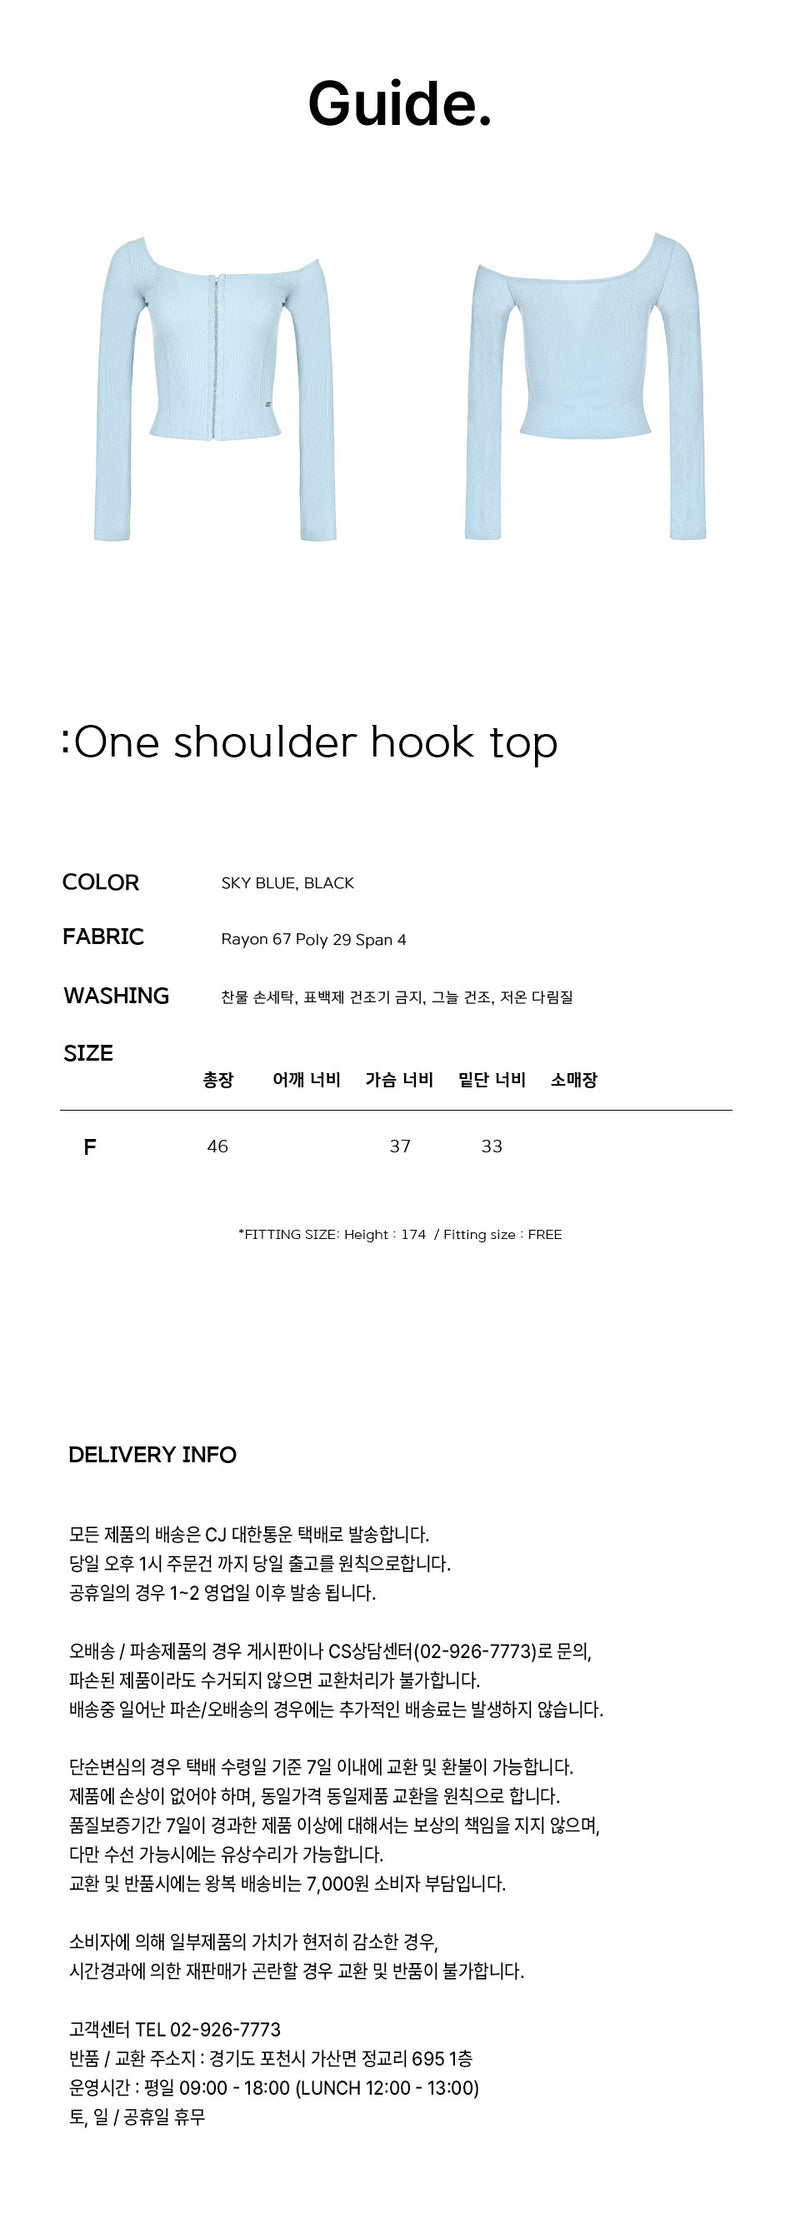 ワンショルダーフックトップス / One shoulder hook top